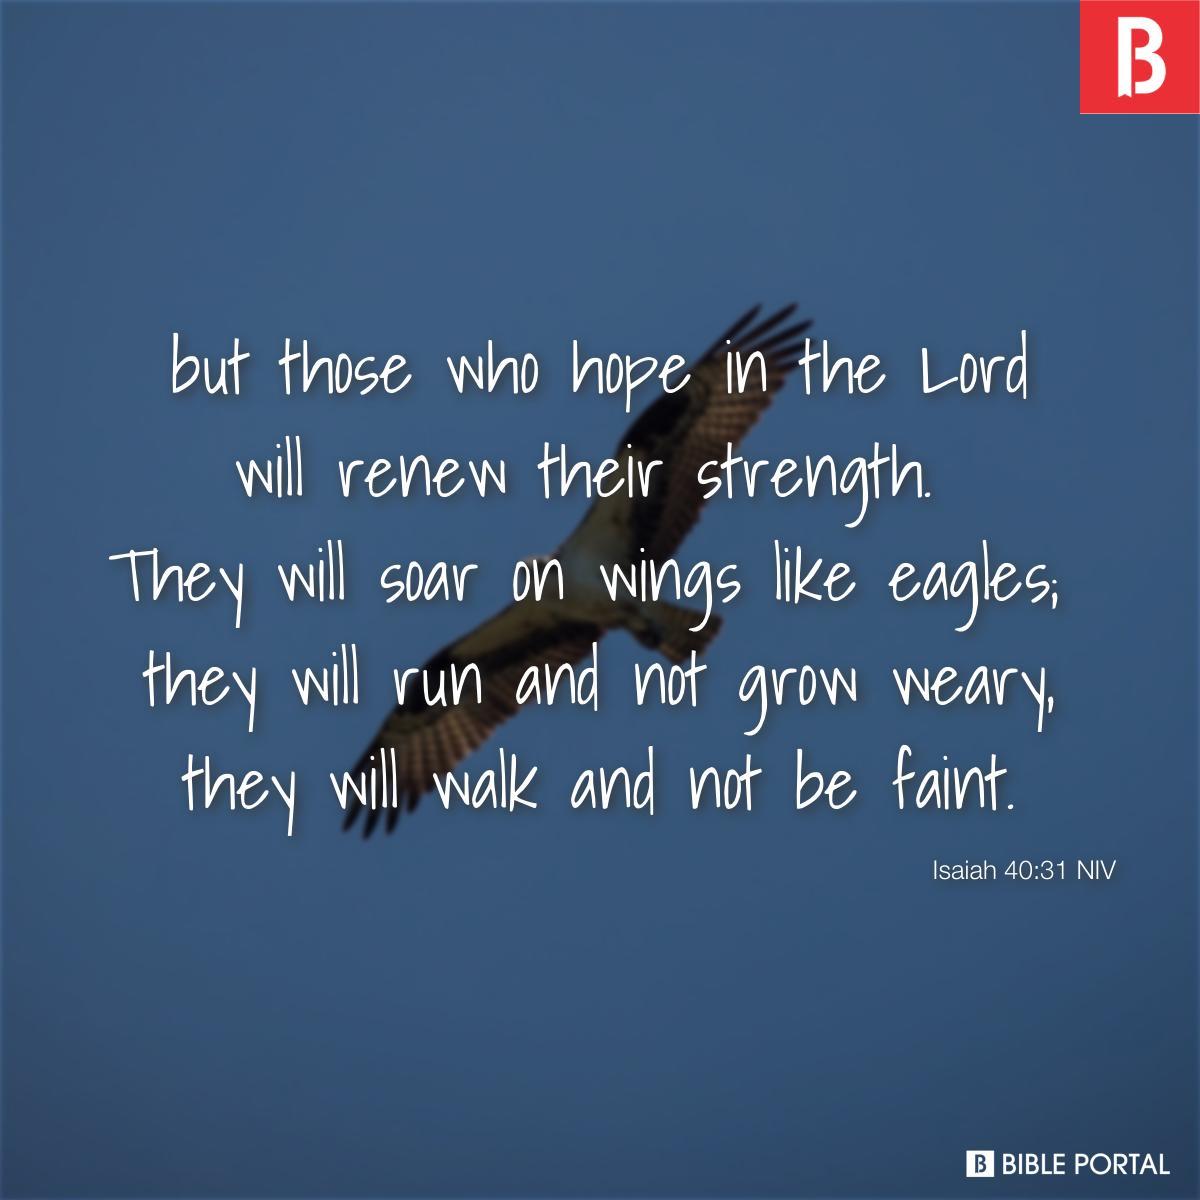 Isaiah 40:31 NIV